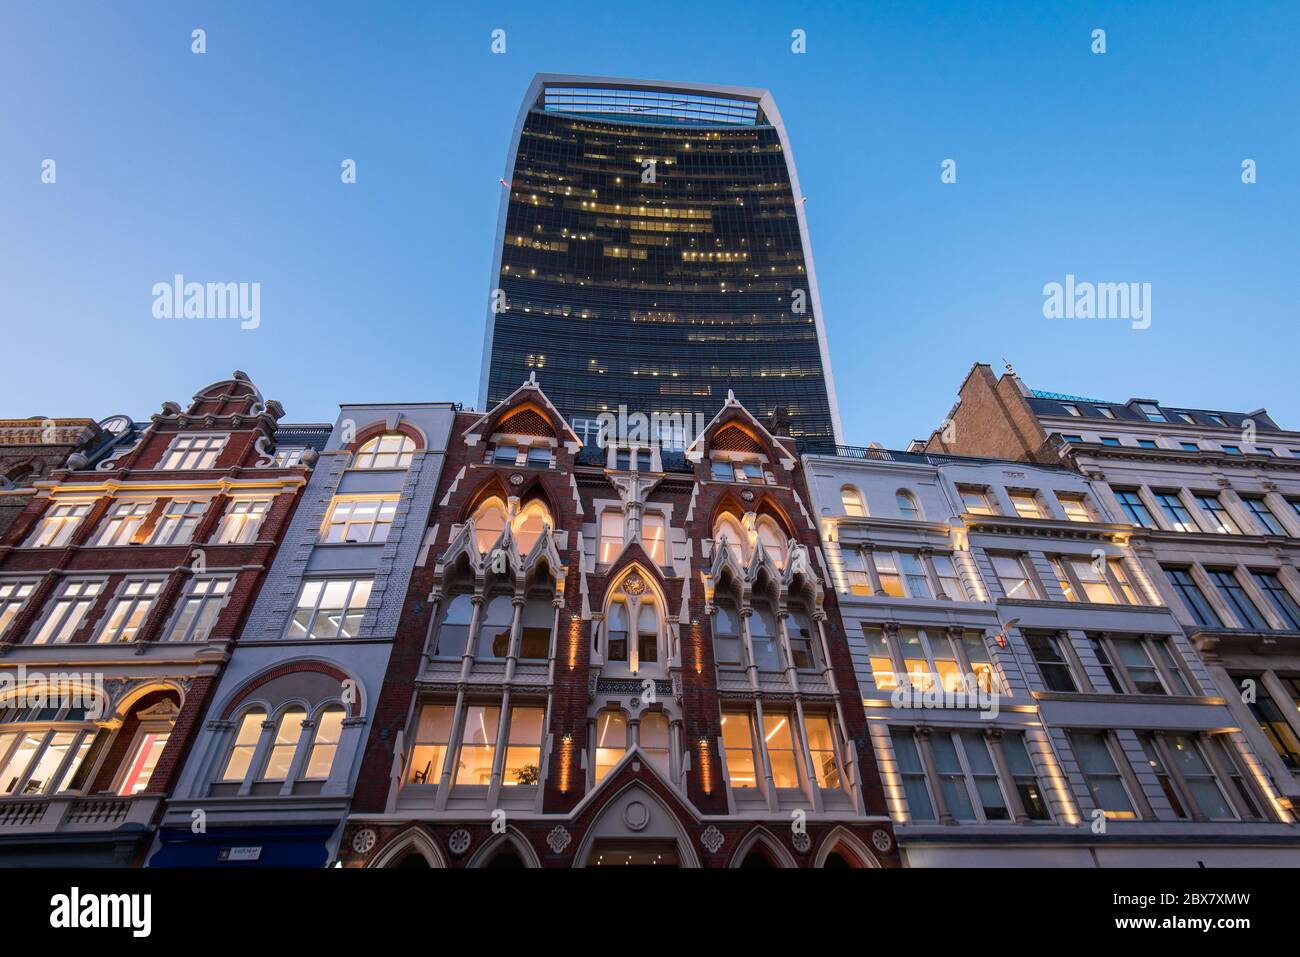 L'edificio Walkie Talkie sorge sopra gli edifici britannici di vecchia architettura a Londra, Regno Unito Foto Stock